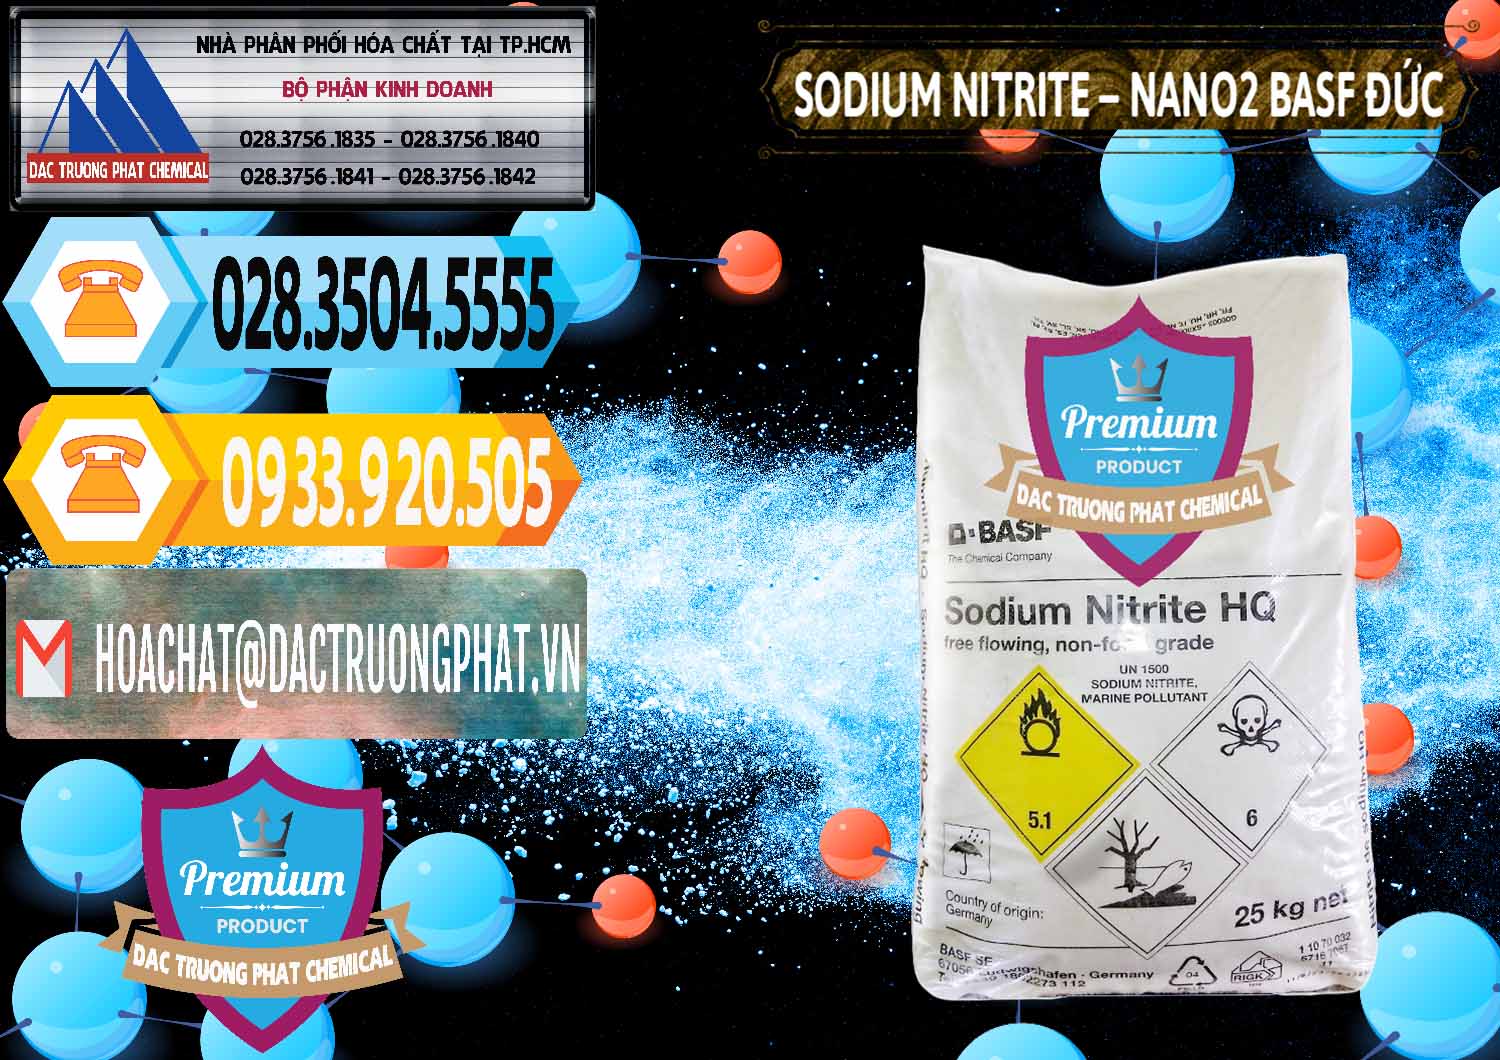 Cty chuyên bán - cung cấp Sodium Nitrite - NANO2 Đức BASF Germany - 0148 - Đơn vị cung cấp & phân phối hóa chất tại TP.HCM - hoachattayrua.net